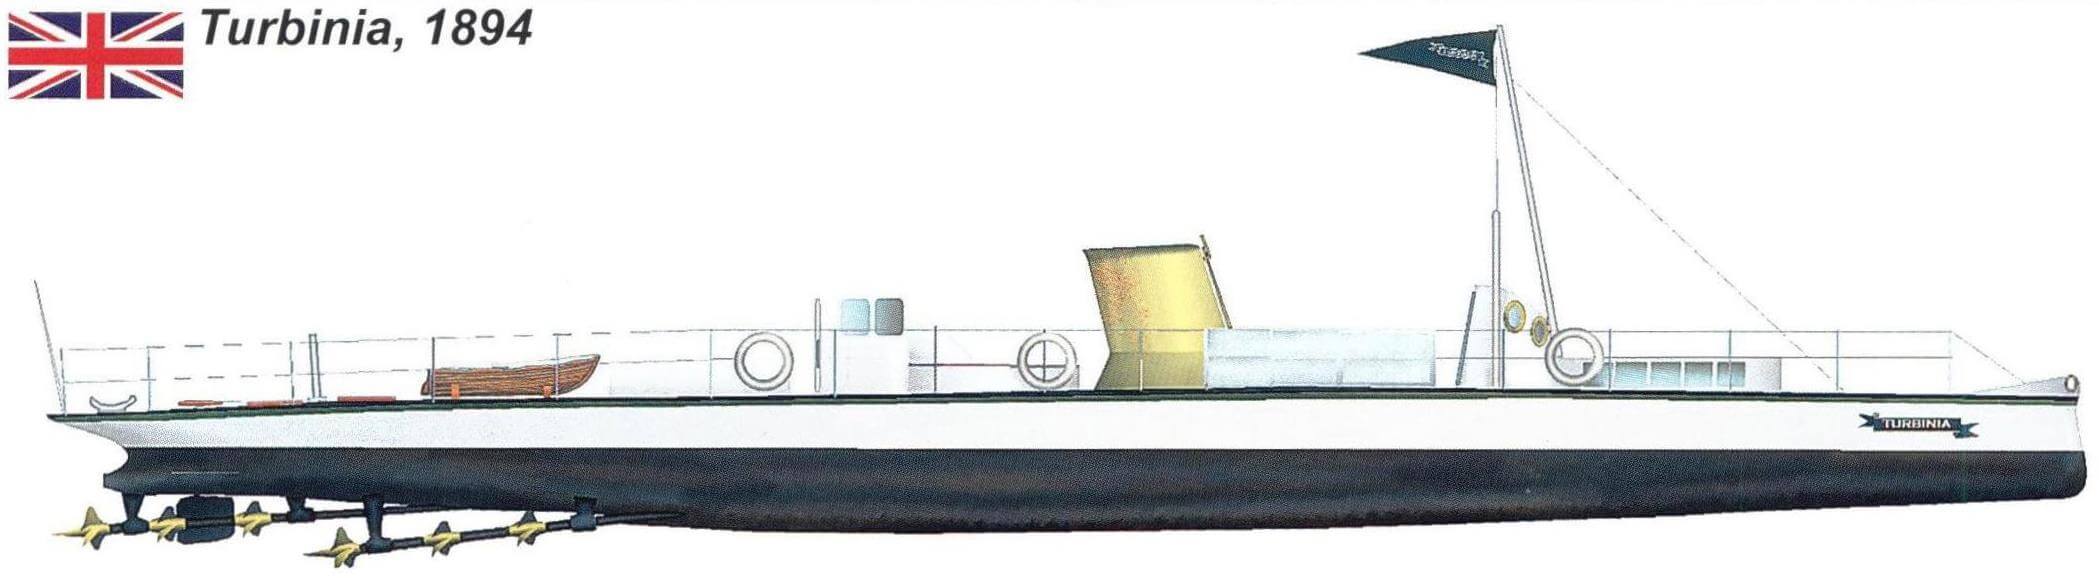 Экспериментальная яхта «Турбиния», вид сбоку